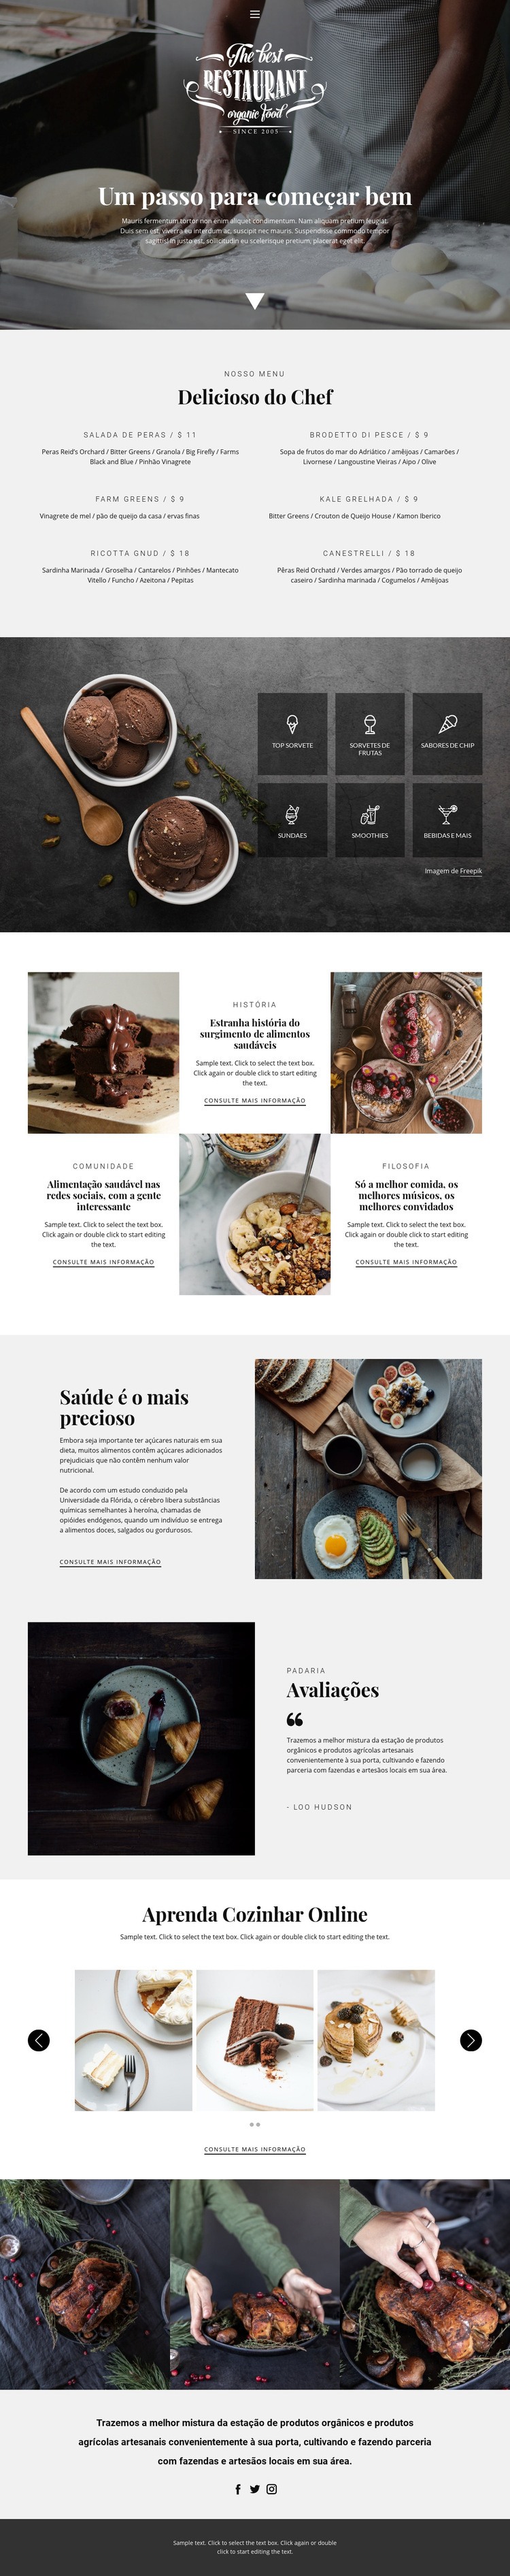 Receitas e aulas de culinária Modelo de uma página